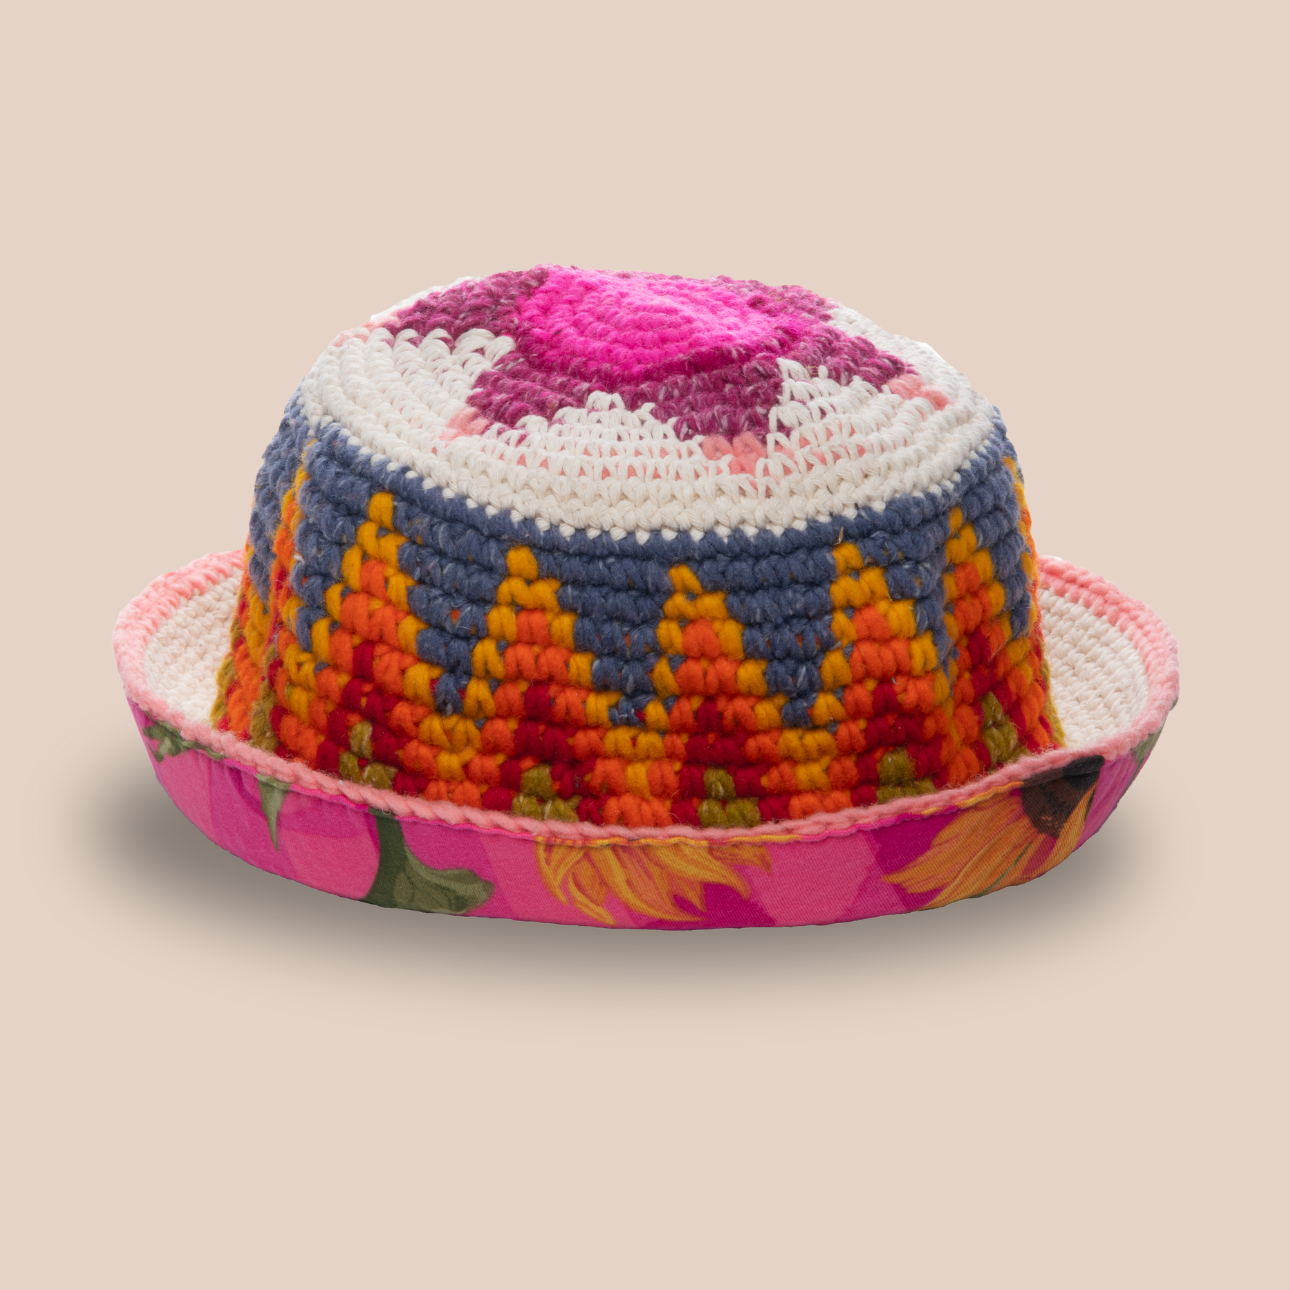 Image du bucket hat Leo de Maison Badigo, bucket hat (bob) en laine crocheté multicolore doublée unique et tendance